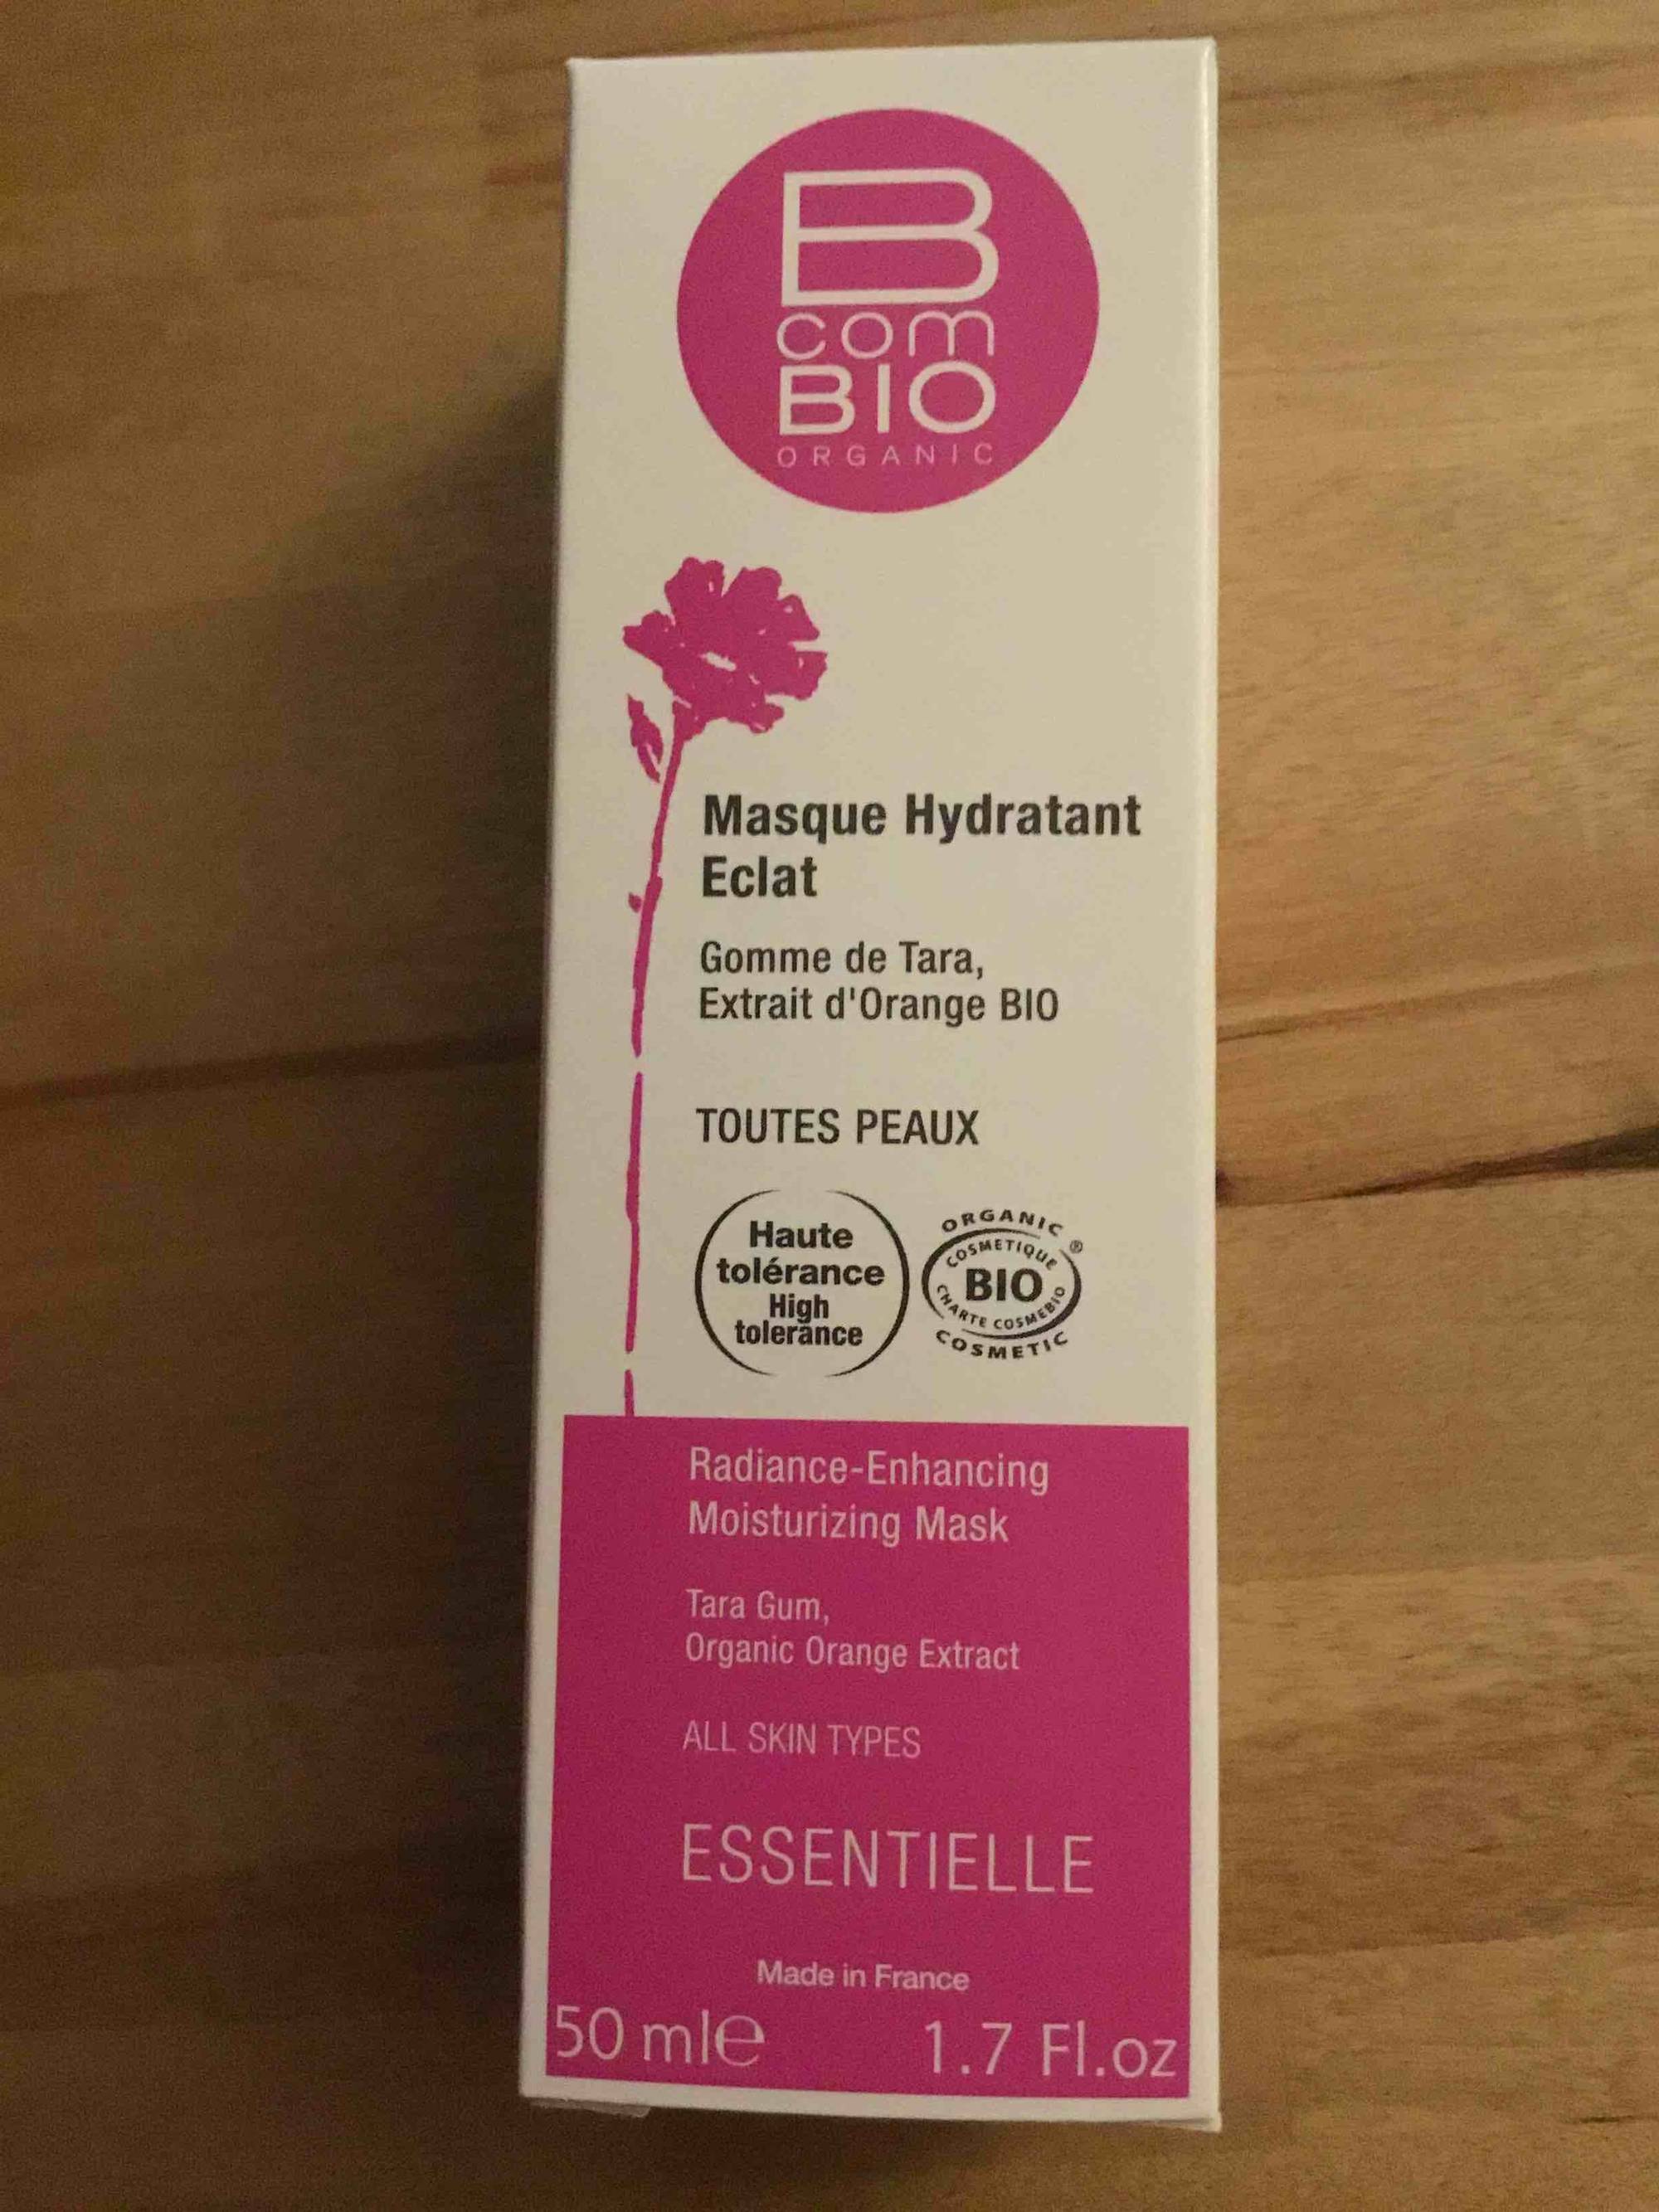 B COM BIO - Essentielle - Masque hydratant éclat